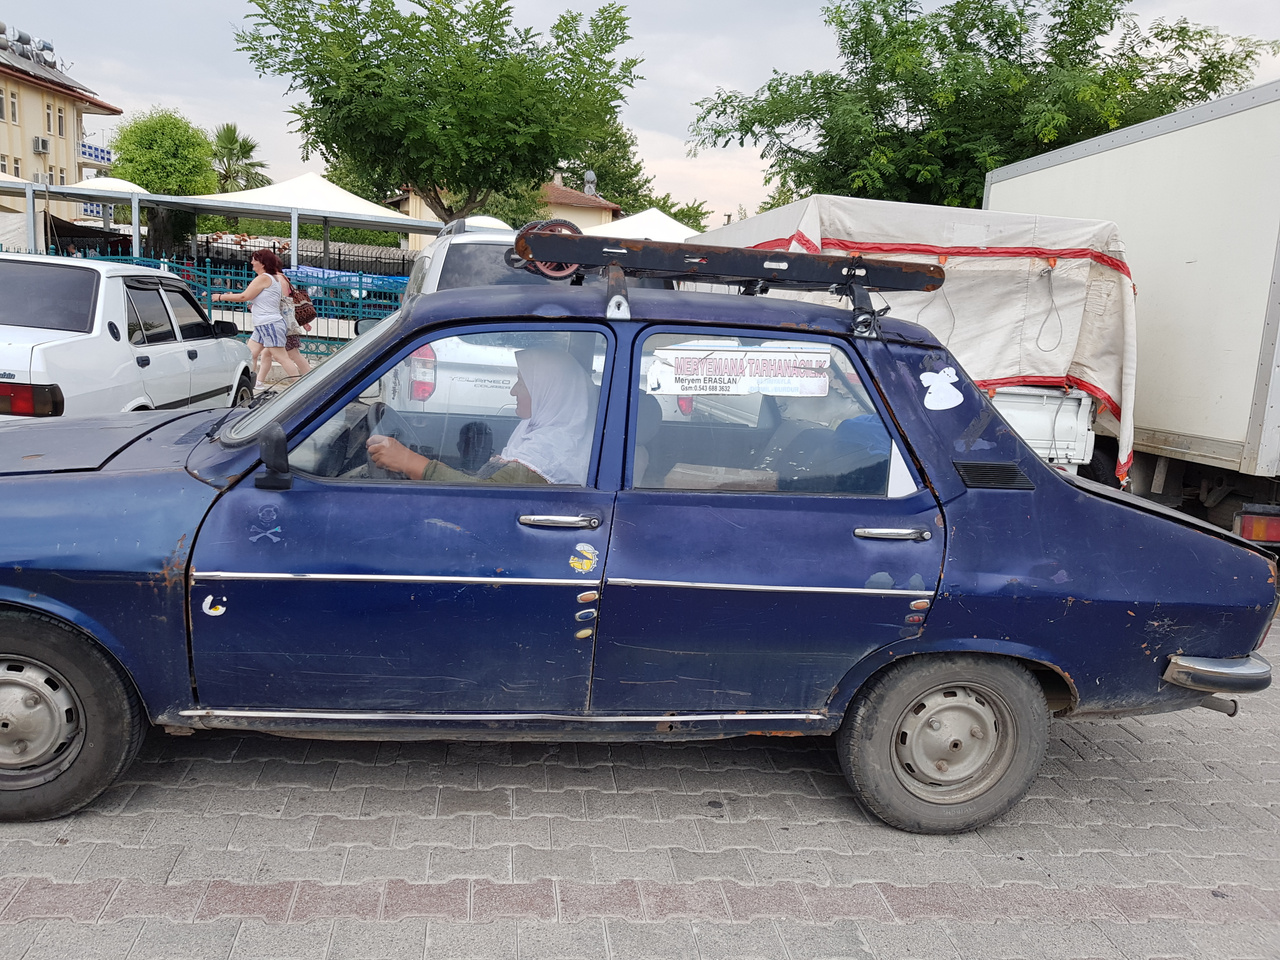 ...és ezzel közlekednek 1. Nem, nem Dacia, Renault 12-vel viszi az asszony a portékát a hetente, keddenként megrendezendő óriási utcai bazárba Fethiyében. A Tofaşok mellett ezek a másik matuzsálemi korban lévő túlélők, itt-ott felbukkan néhány Lada Samara is